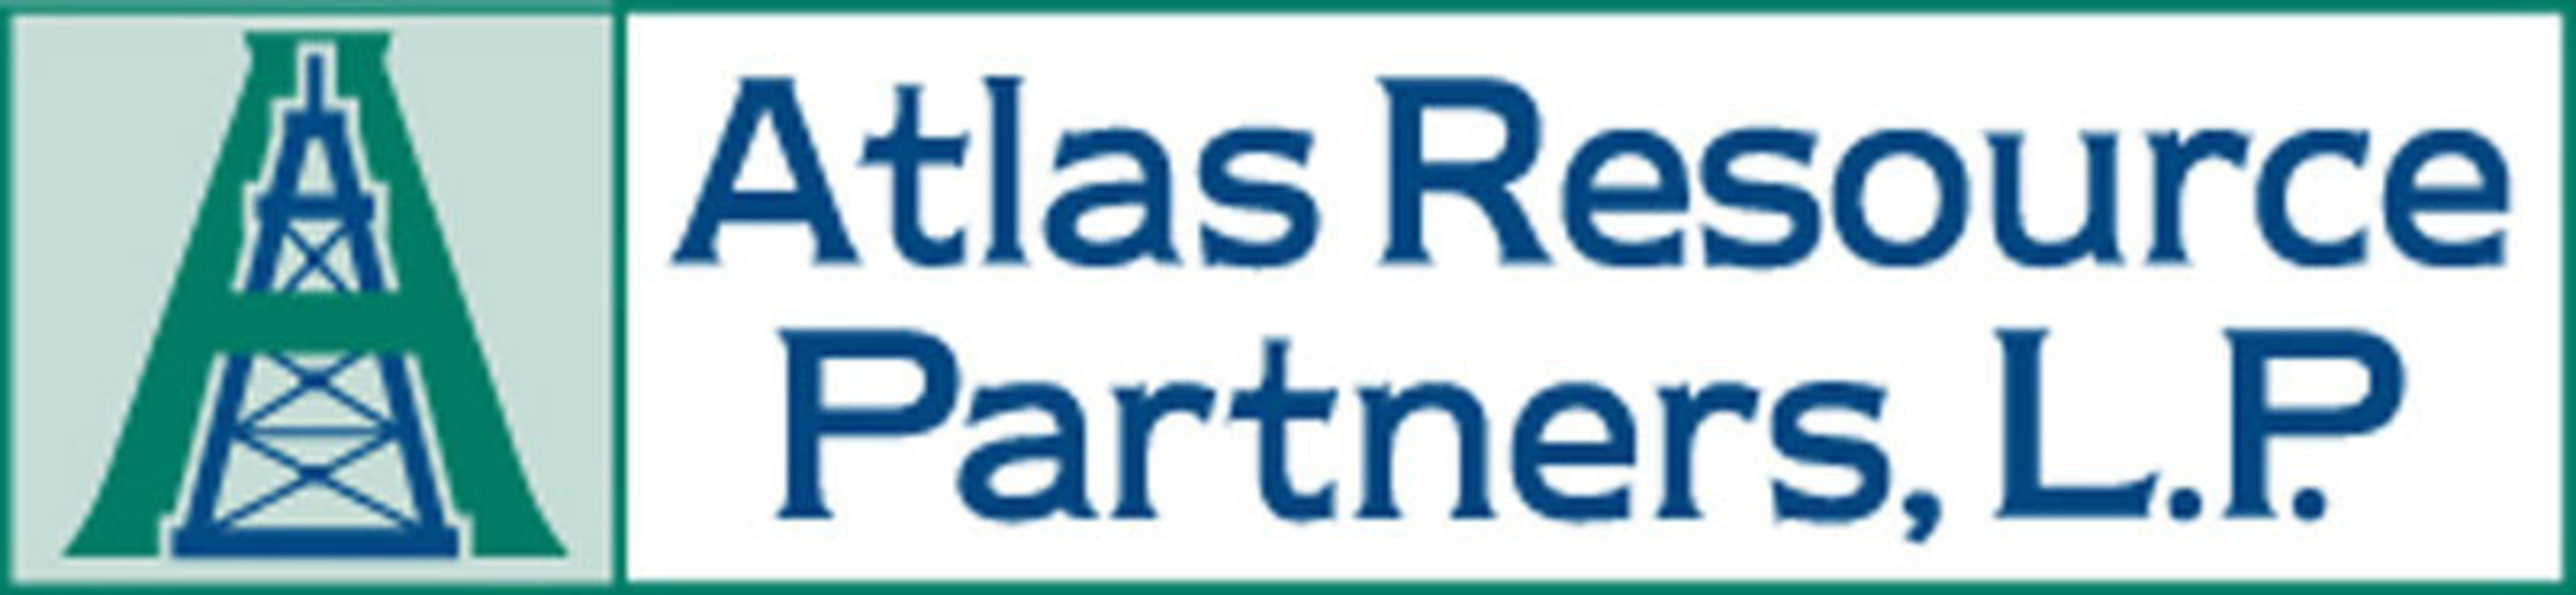 Atlas Resource Partners, L.P. (PRNewsFoto/Atlas Resource Partners, L.P.)